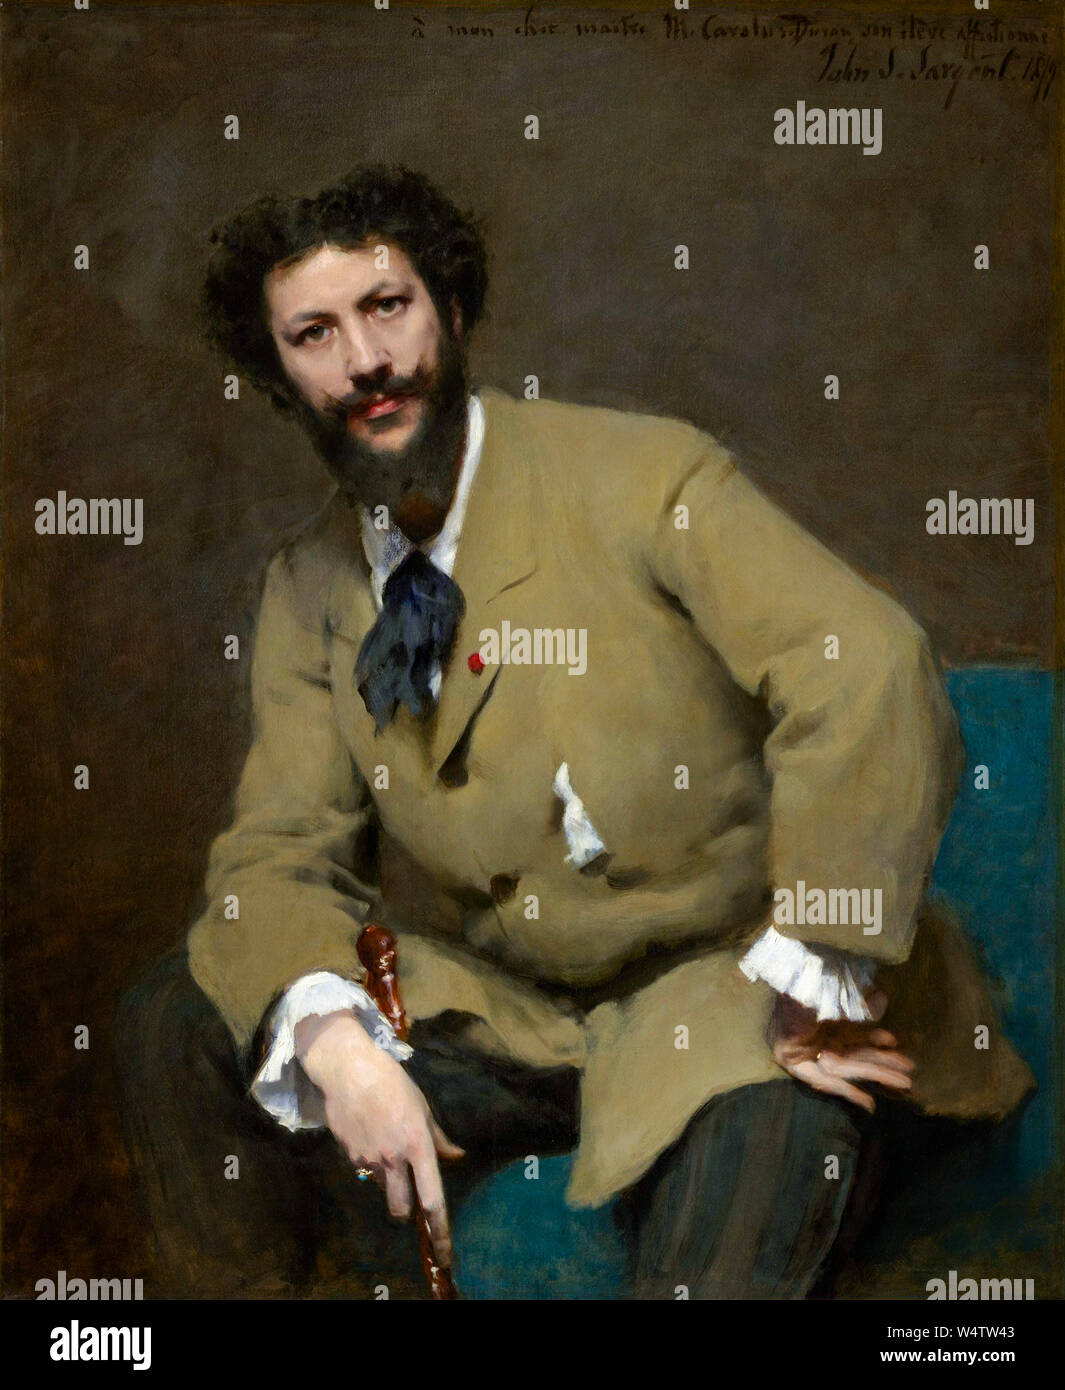 Carolus Duran, (1837-1917), peintre français et instructeur d'art, portrait peint à l'huile sur toile par John Singer Sargent, 1879 Banque D'Images